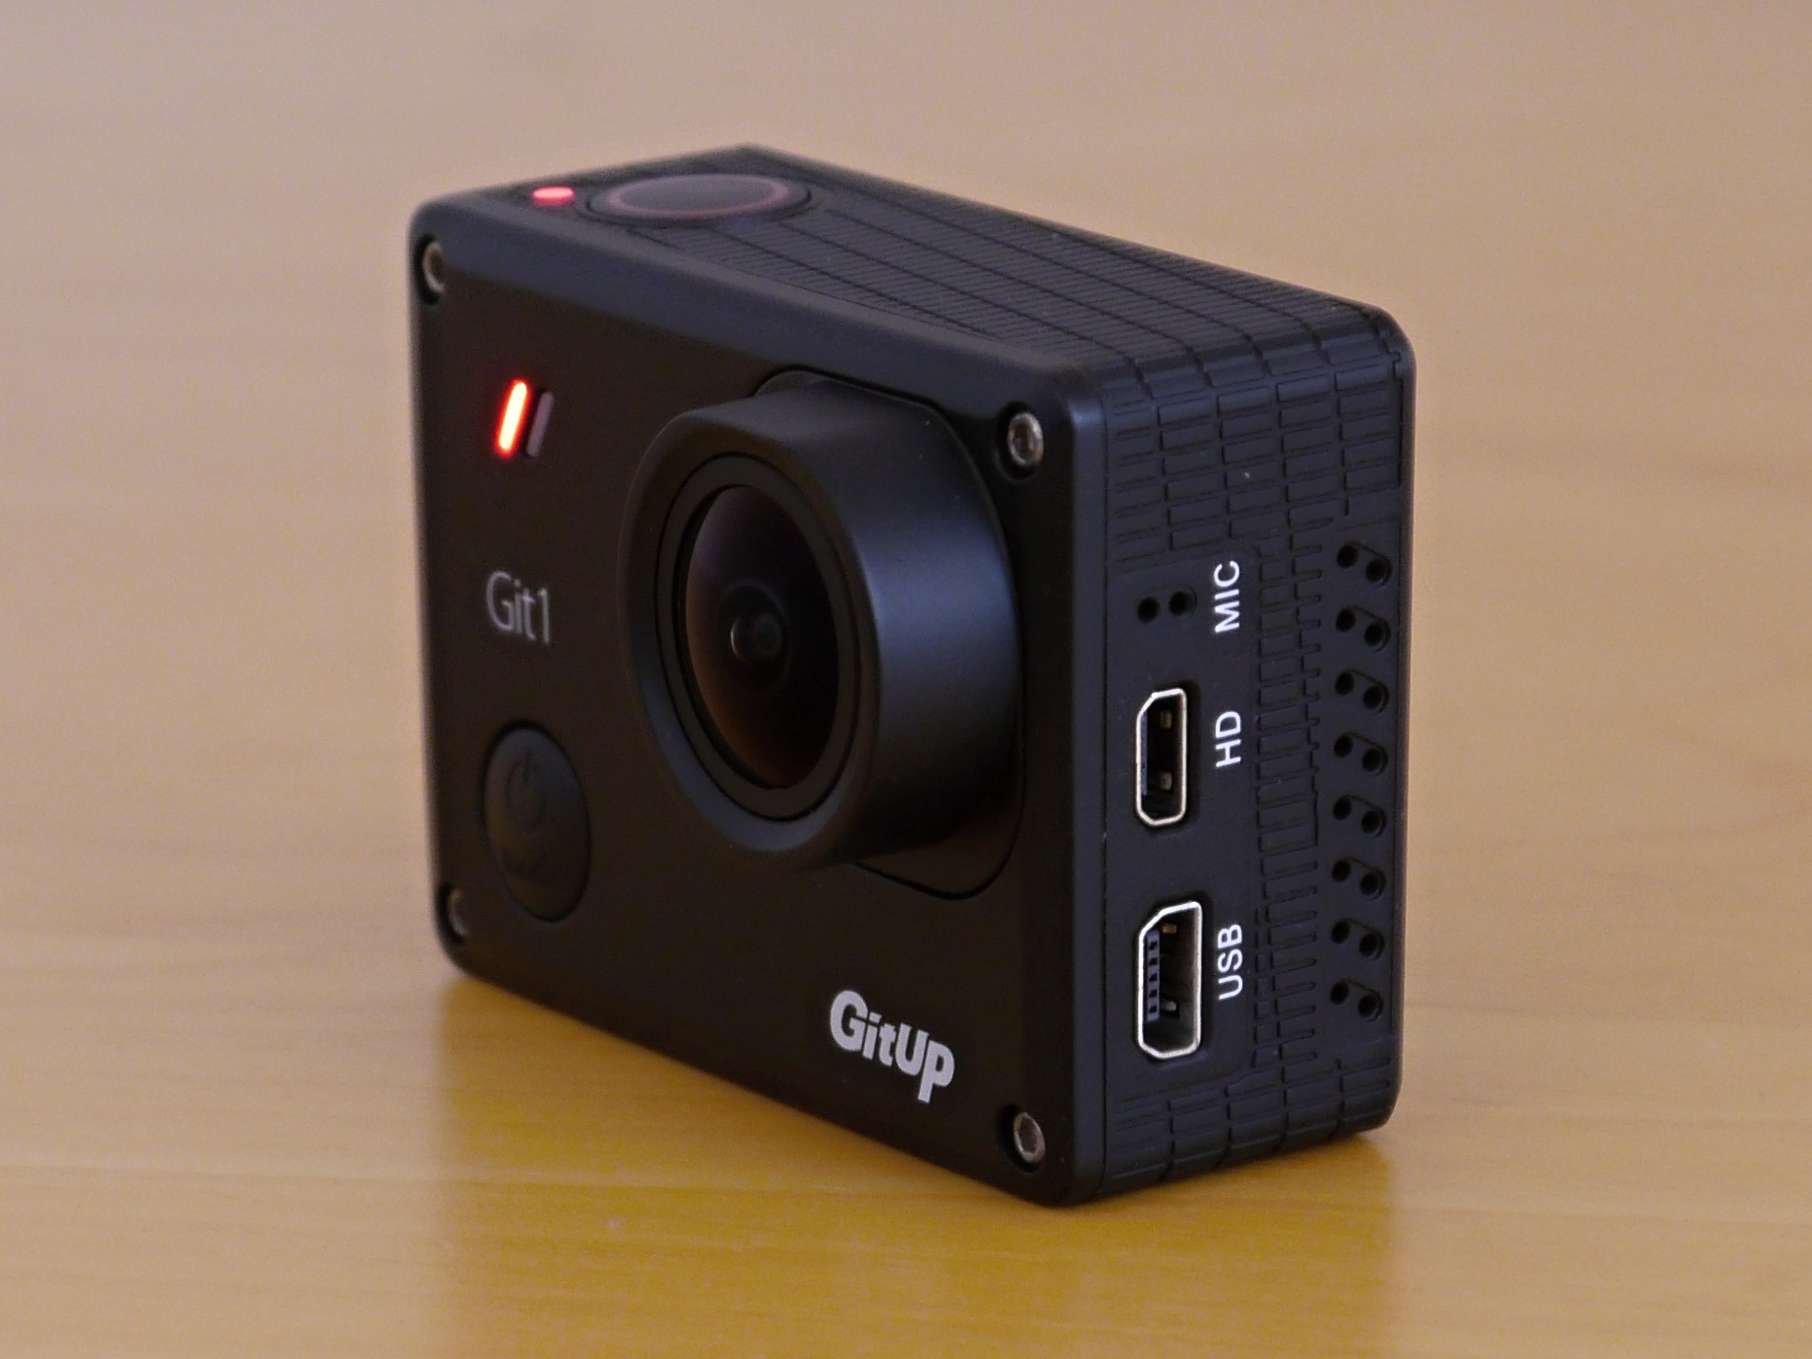 Sportovní kamera GitUp Git1